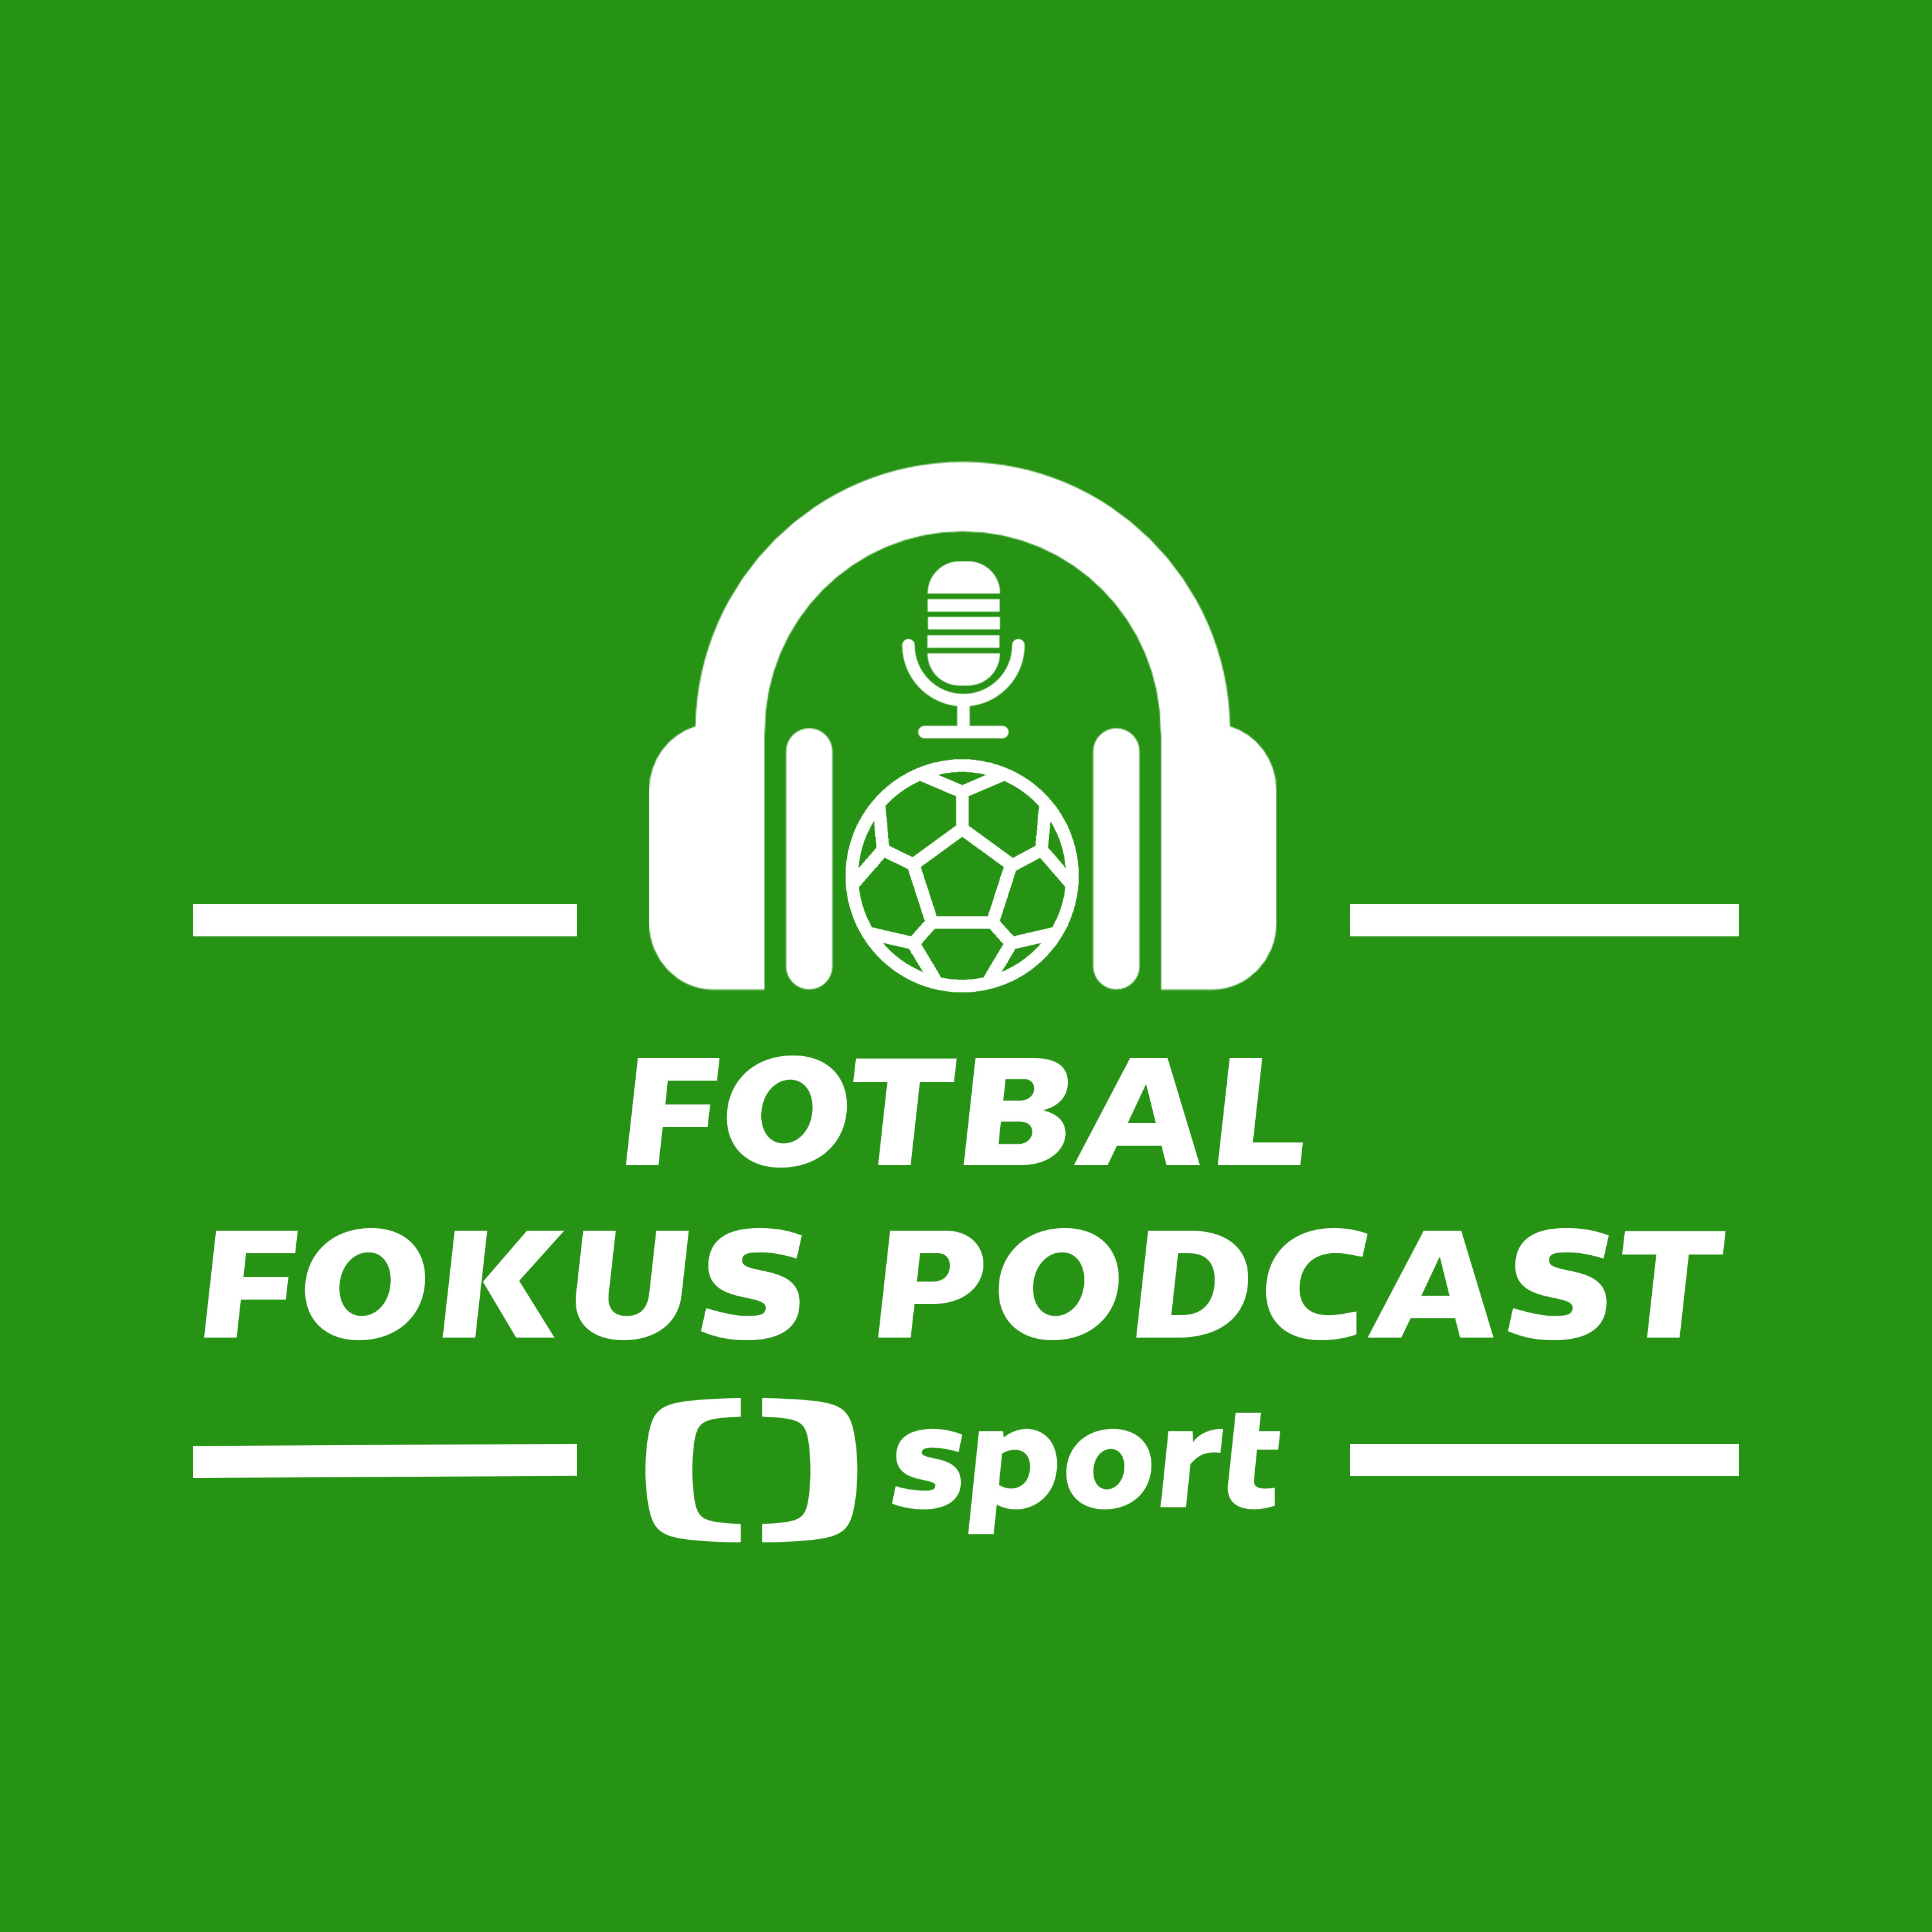 Fotbal fokus podcast: Nároďák před zápasem pravdy? Co řekl Coufal a proč se naštval Kozel?